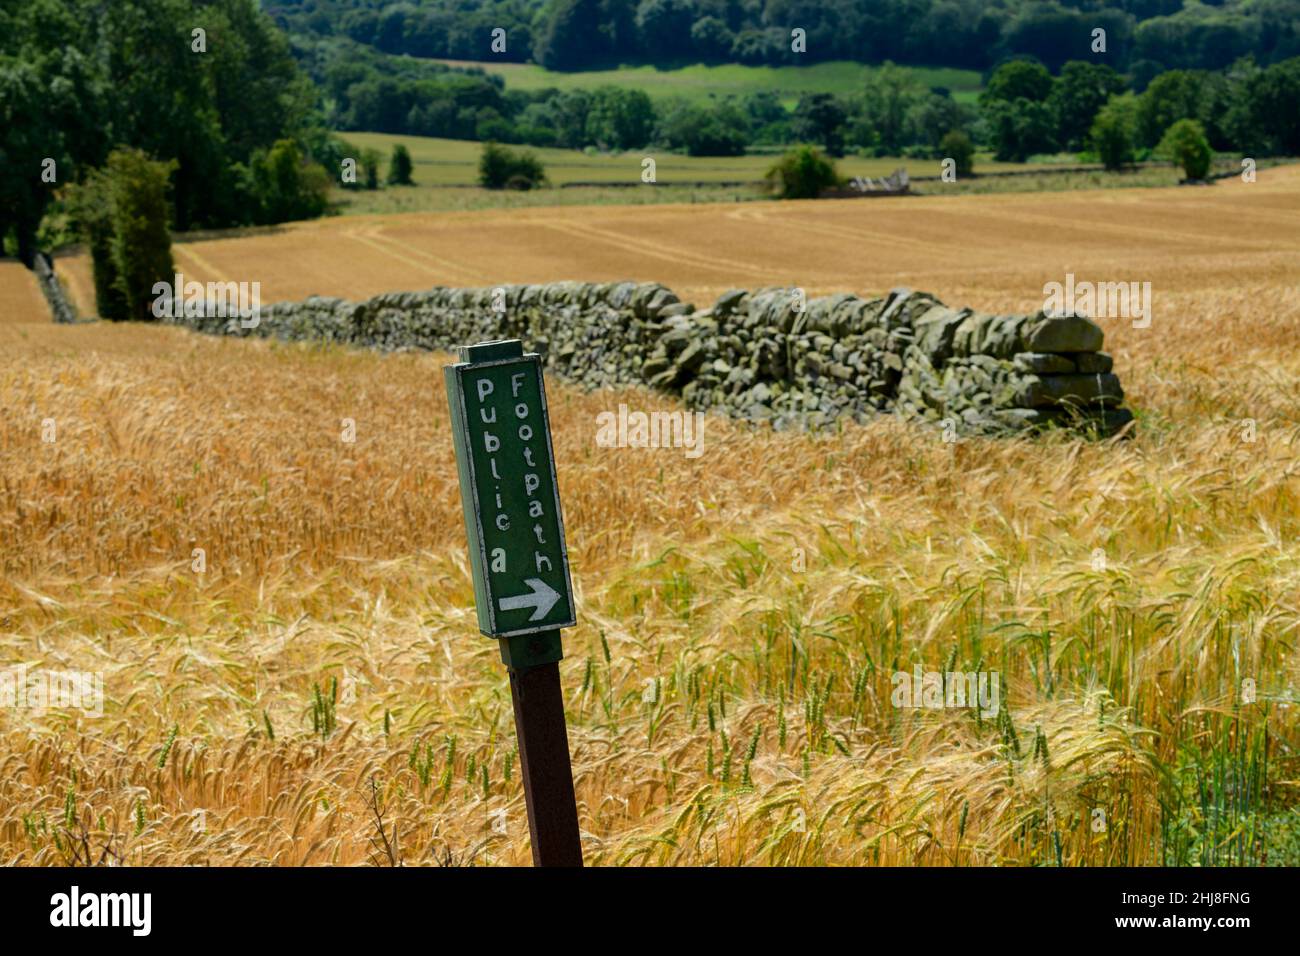 Signe de sentier dans le champ pittoresque de la ferme de mûrissement d'orge dorée (cultures céréalières arables cultivées en campagne) - North Yorkshire, Angleterre Royaume-Uni. Banque D'Images